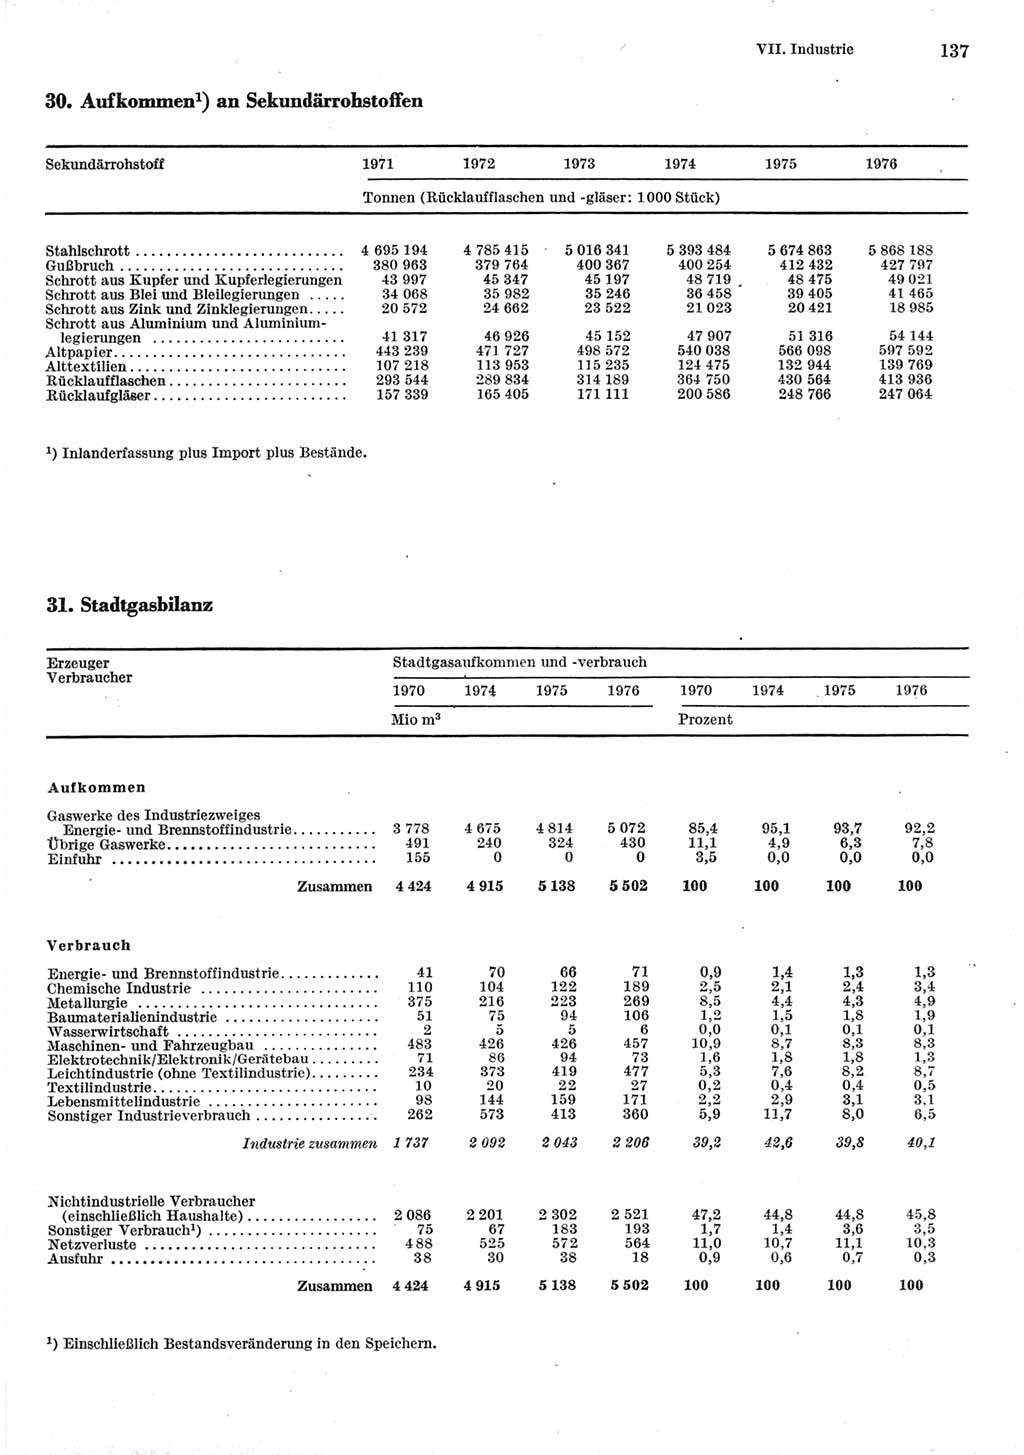 Statistisches Jahrbuch der Deutschen Demokratischen Republik (DDR) 1977, Seite 137 (Stat. Jb. DDR 1977, S. 137)